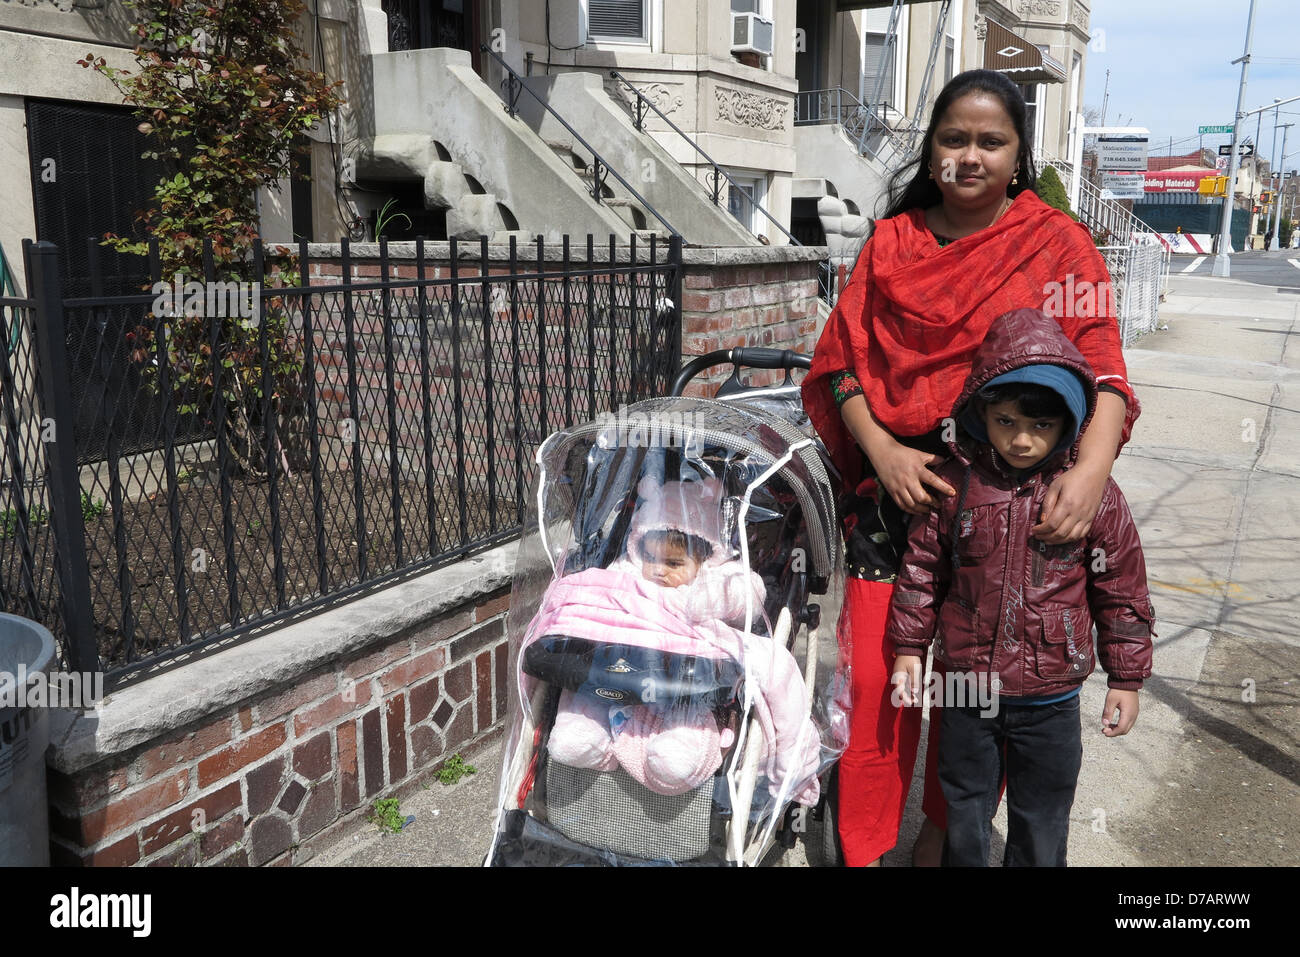 Bangladeshi-American madre y sus hijos, poco de Bangladesh, sección de Kensington, Brooklyn, NY, 2013. Foto de stock